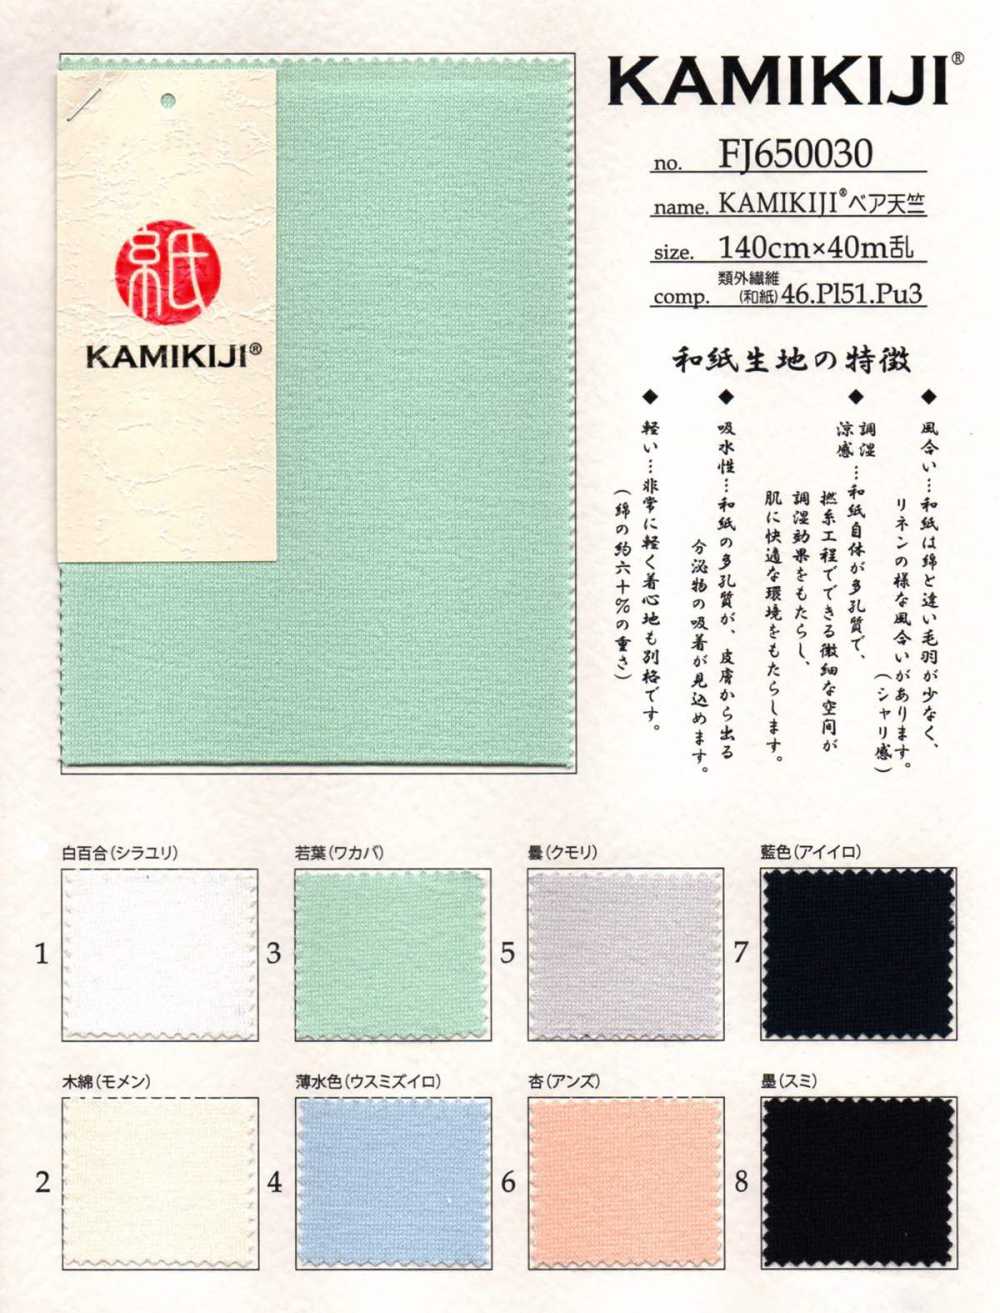 FJ650030 KAMIKIJI® Bare Jersey[Textilgewebe] Fujisaki Textile